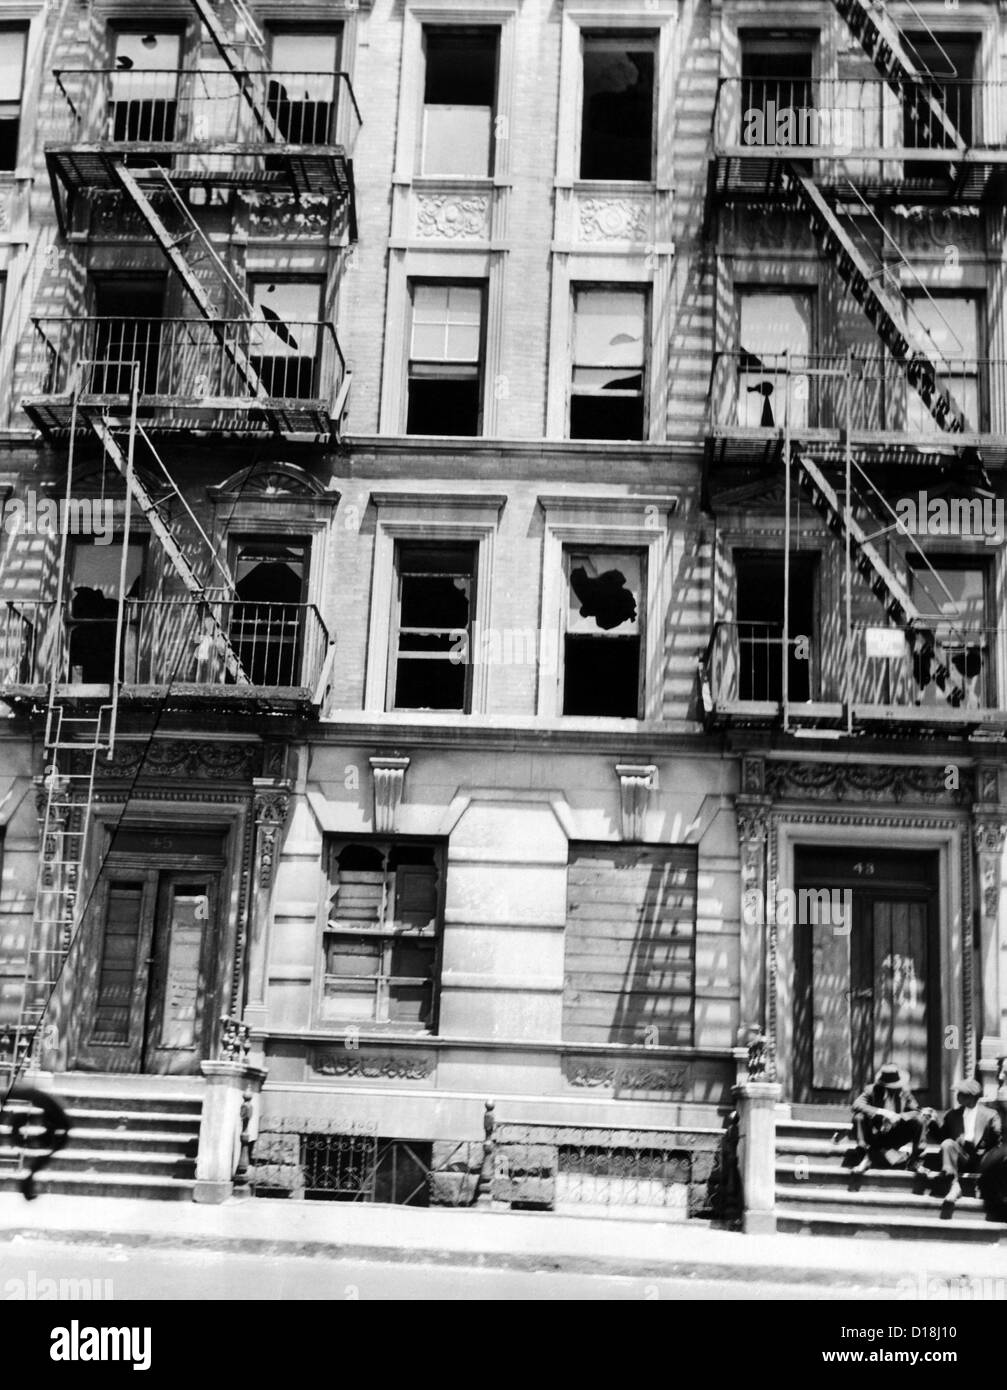 Les immeubles à l'abandon de Harlem à New York. Même avec la pénurie de logements de l'après-guerre, de nombreux immeubles à appartements ont été Banque D'Images